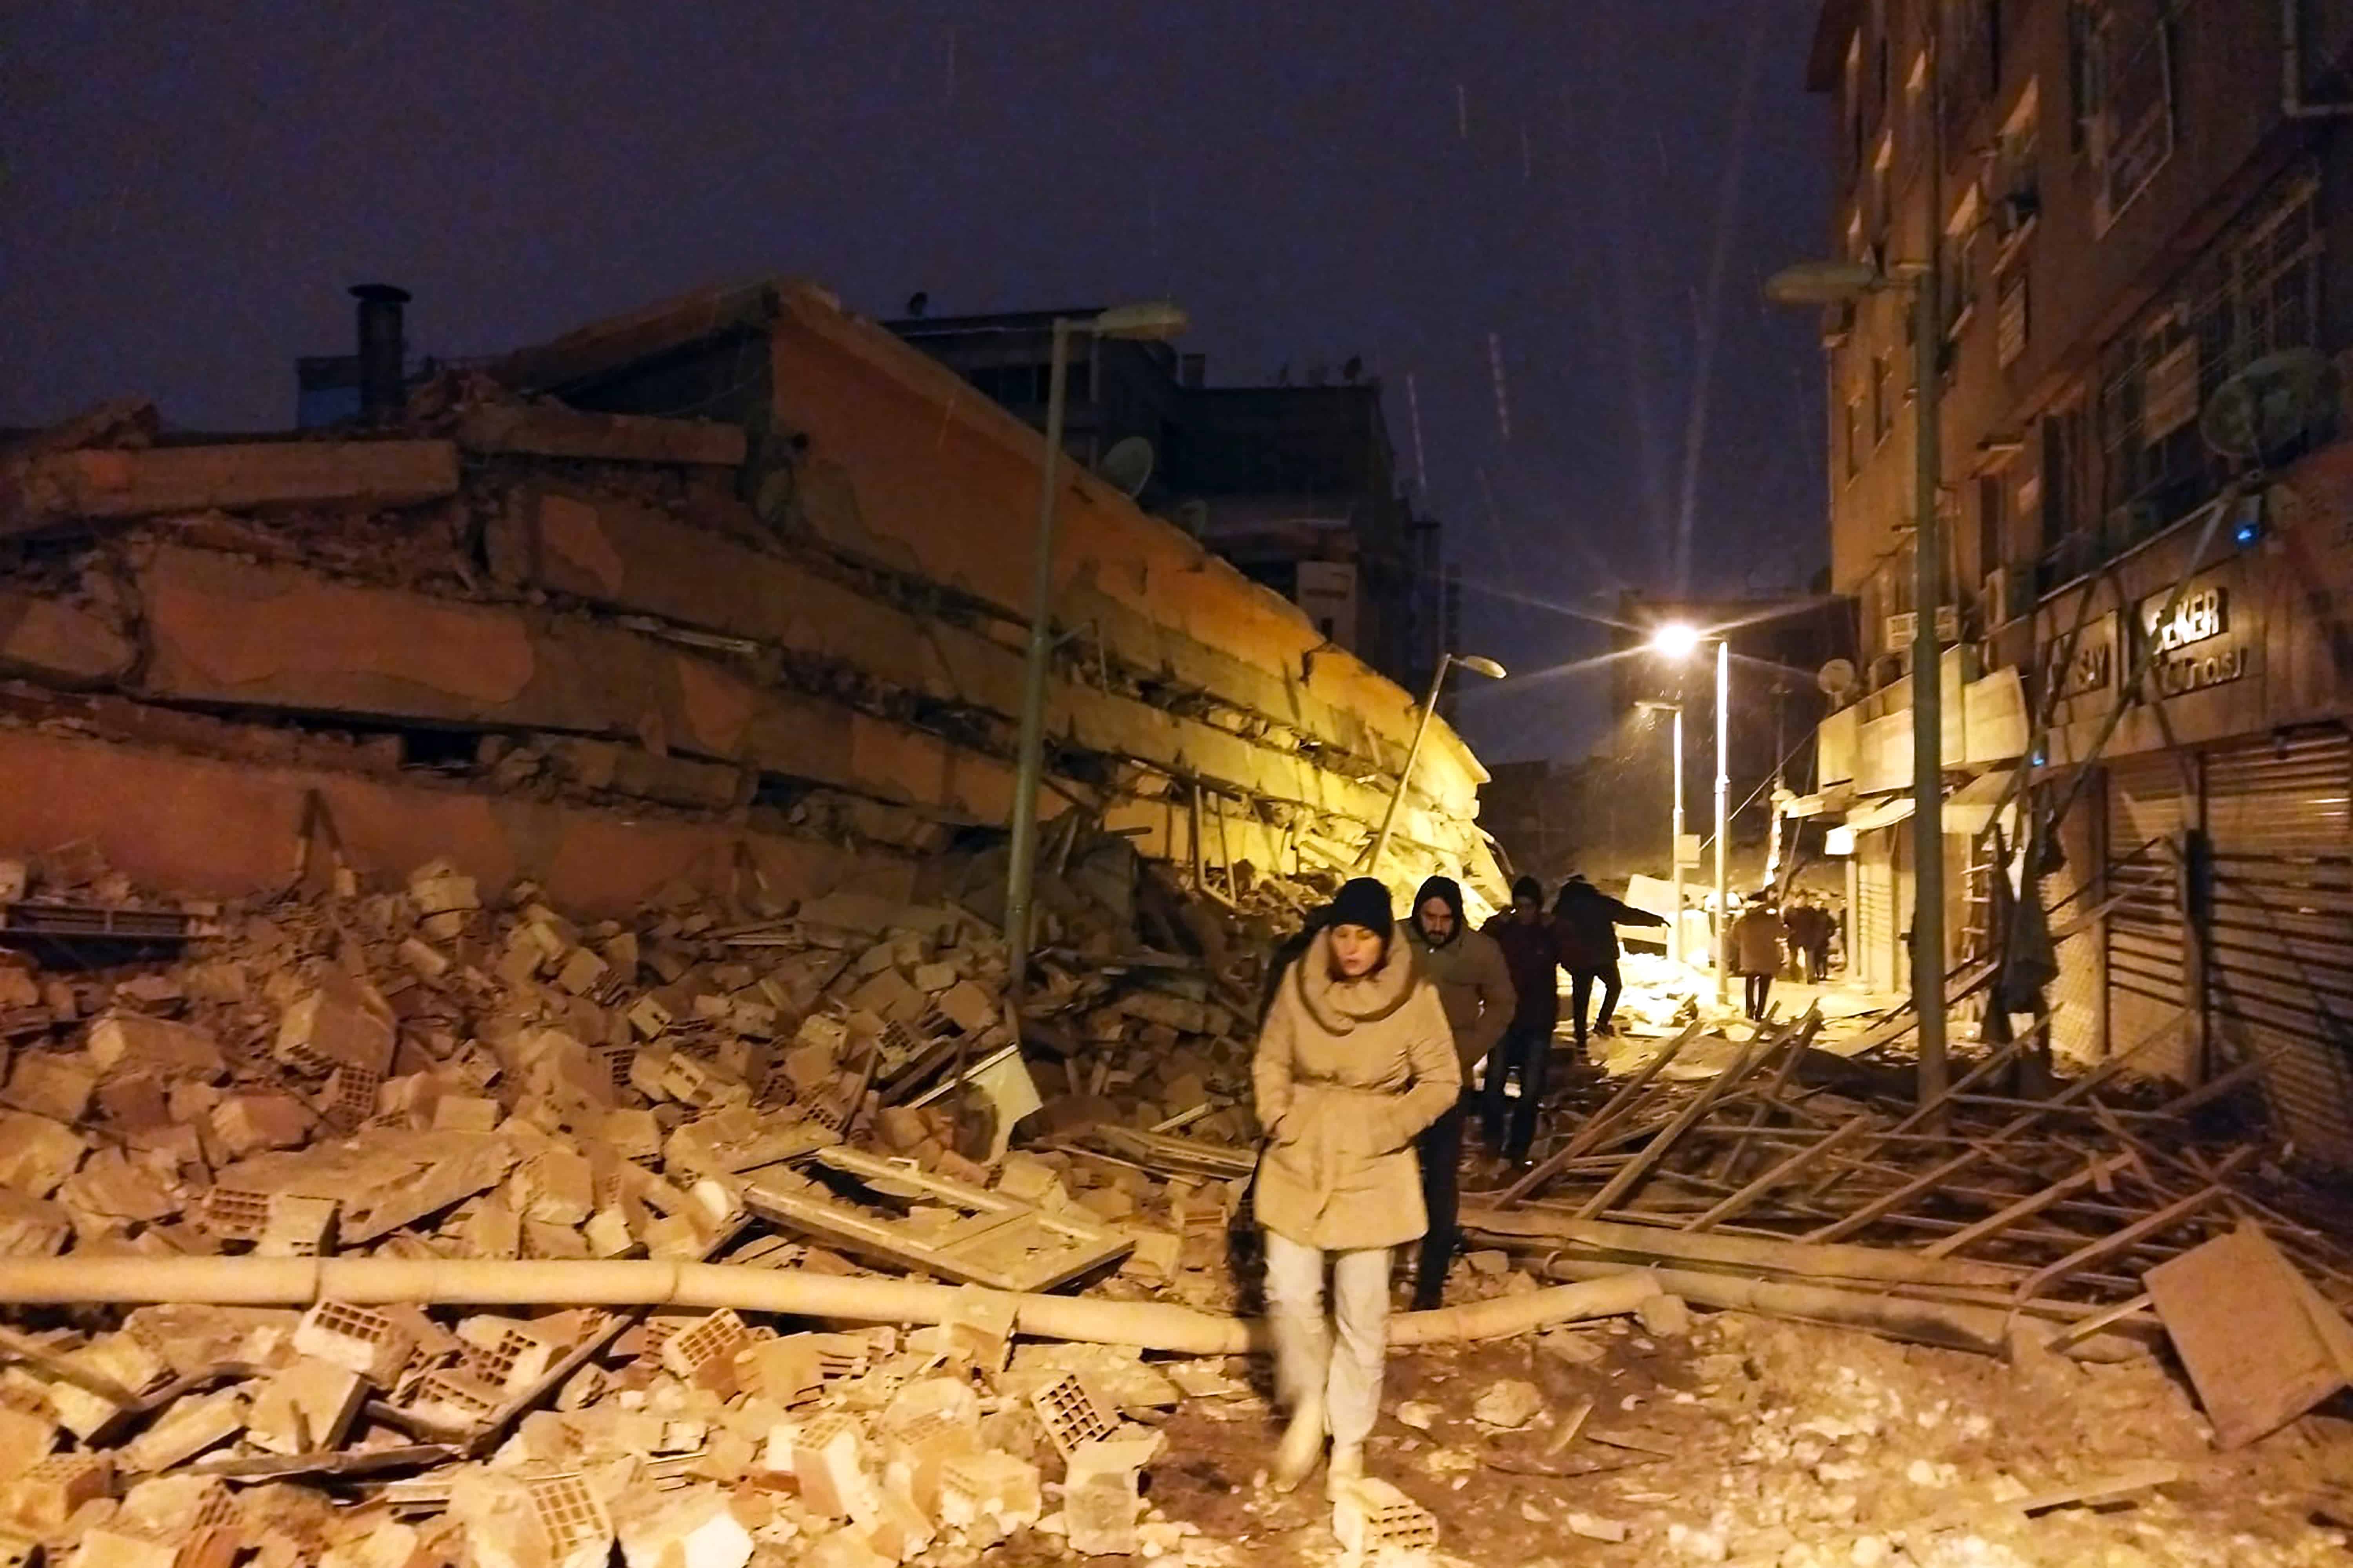 Personas caminan junto a edificios destruidos por un terremoto en Malatya, Turquía, el lunes 6 de febrero de 2023. Un poderoso sismo derribó varios edificios en el sureste de Turquía y Siria y se temen muchas víctimas.